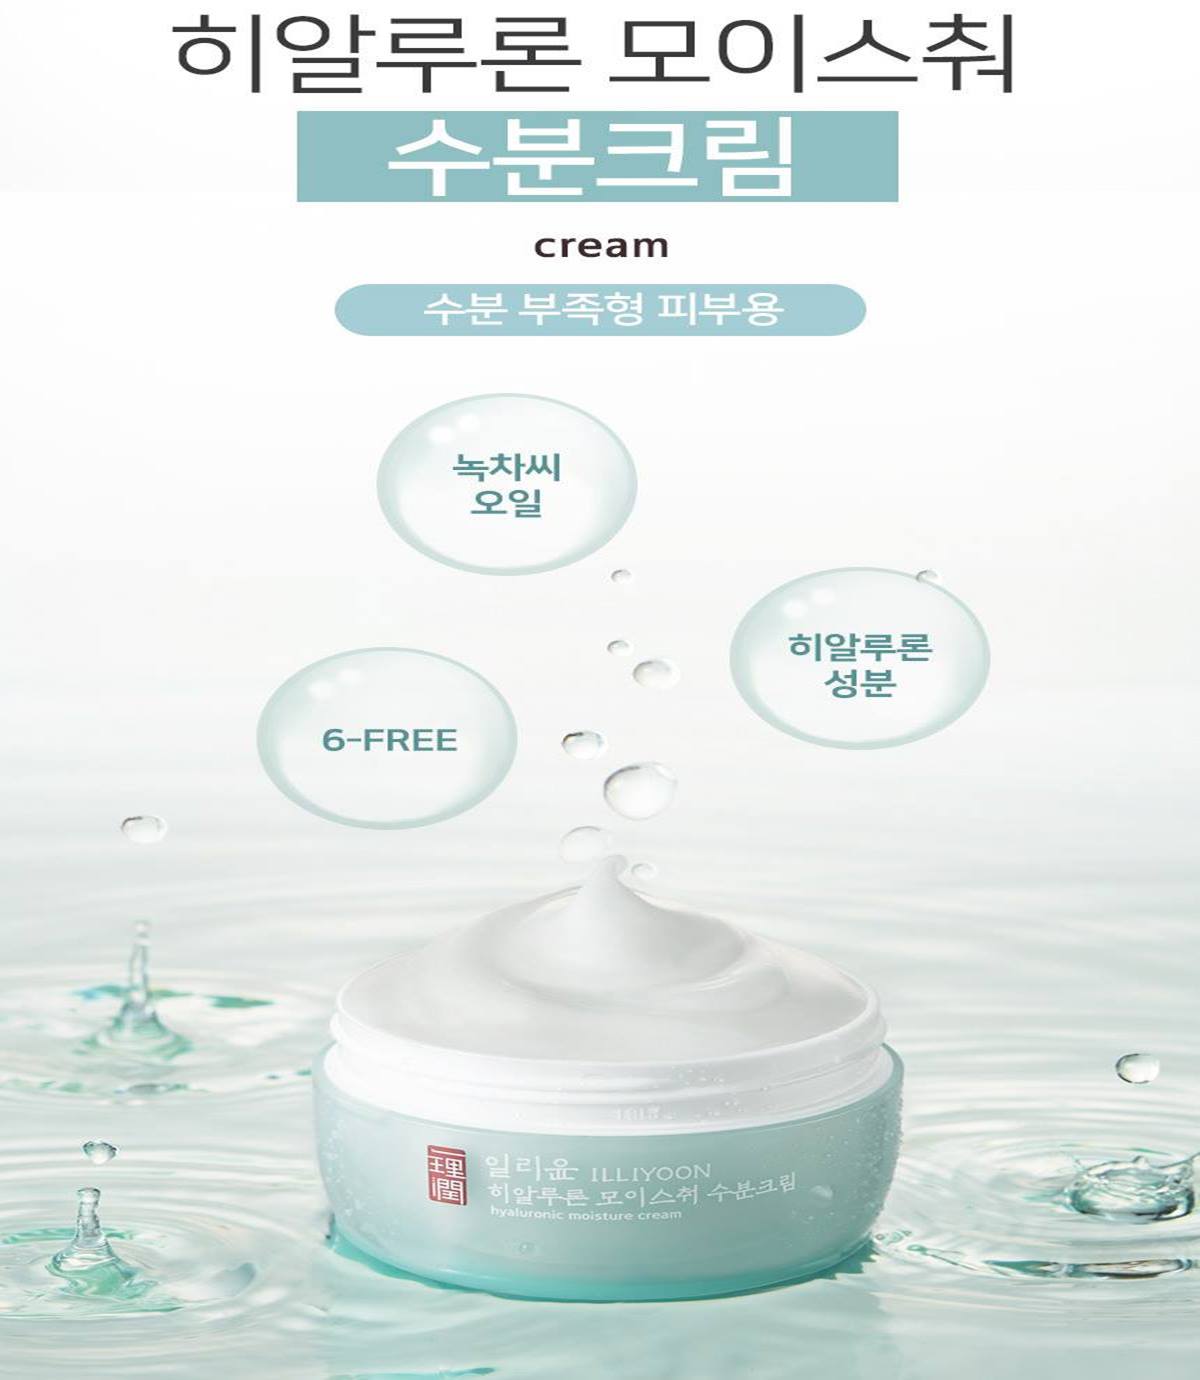 ILLIYOON Hyaluronic Moisture Creams 100ml Skin care Cosmetics Beauty